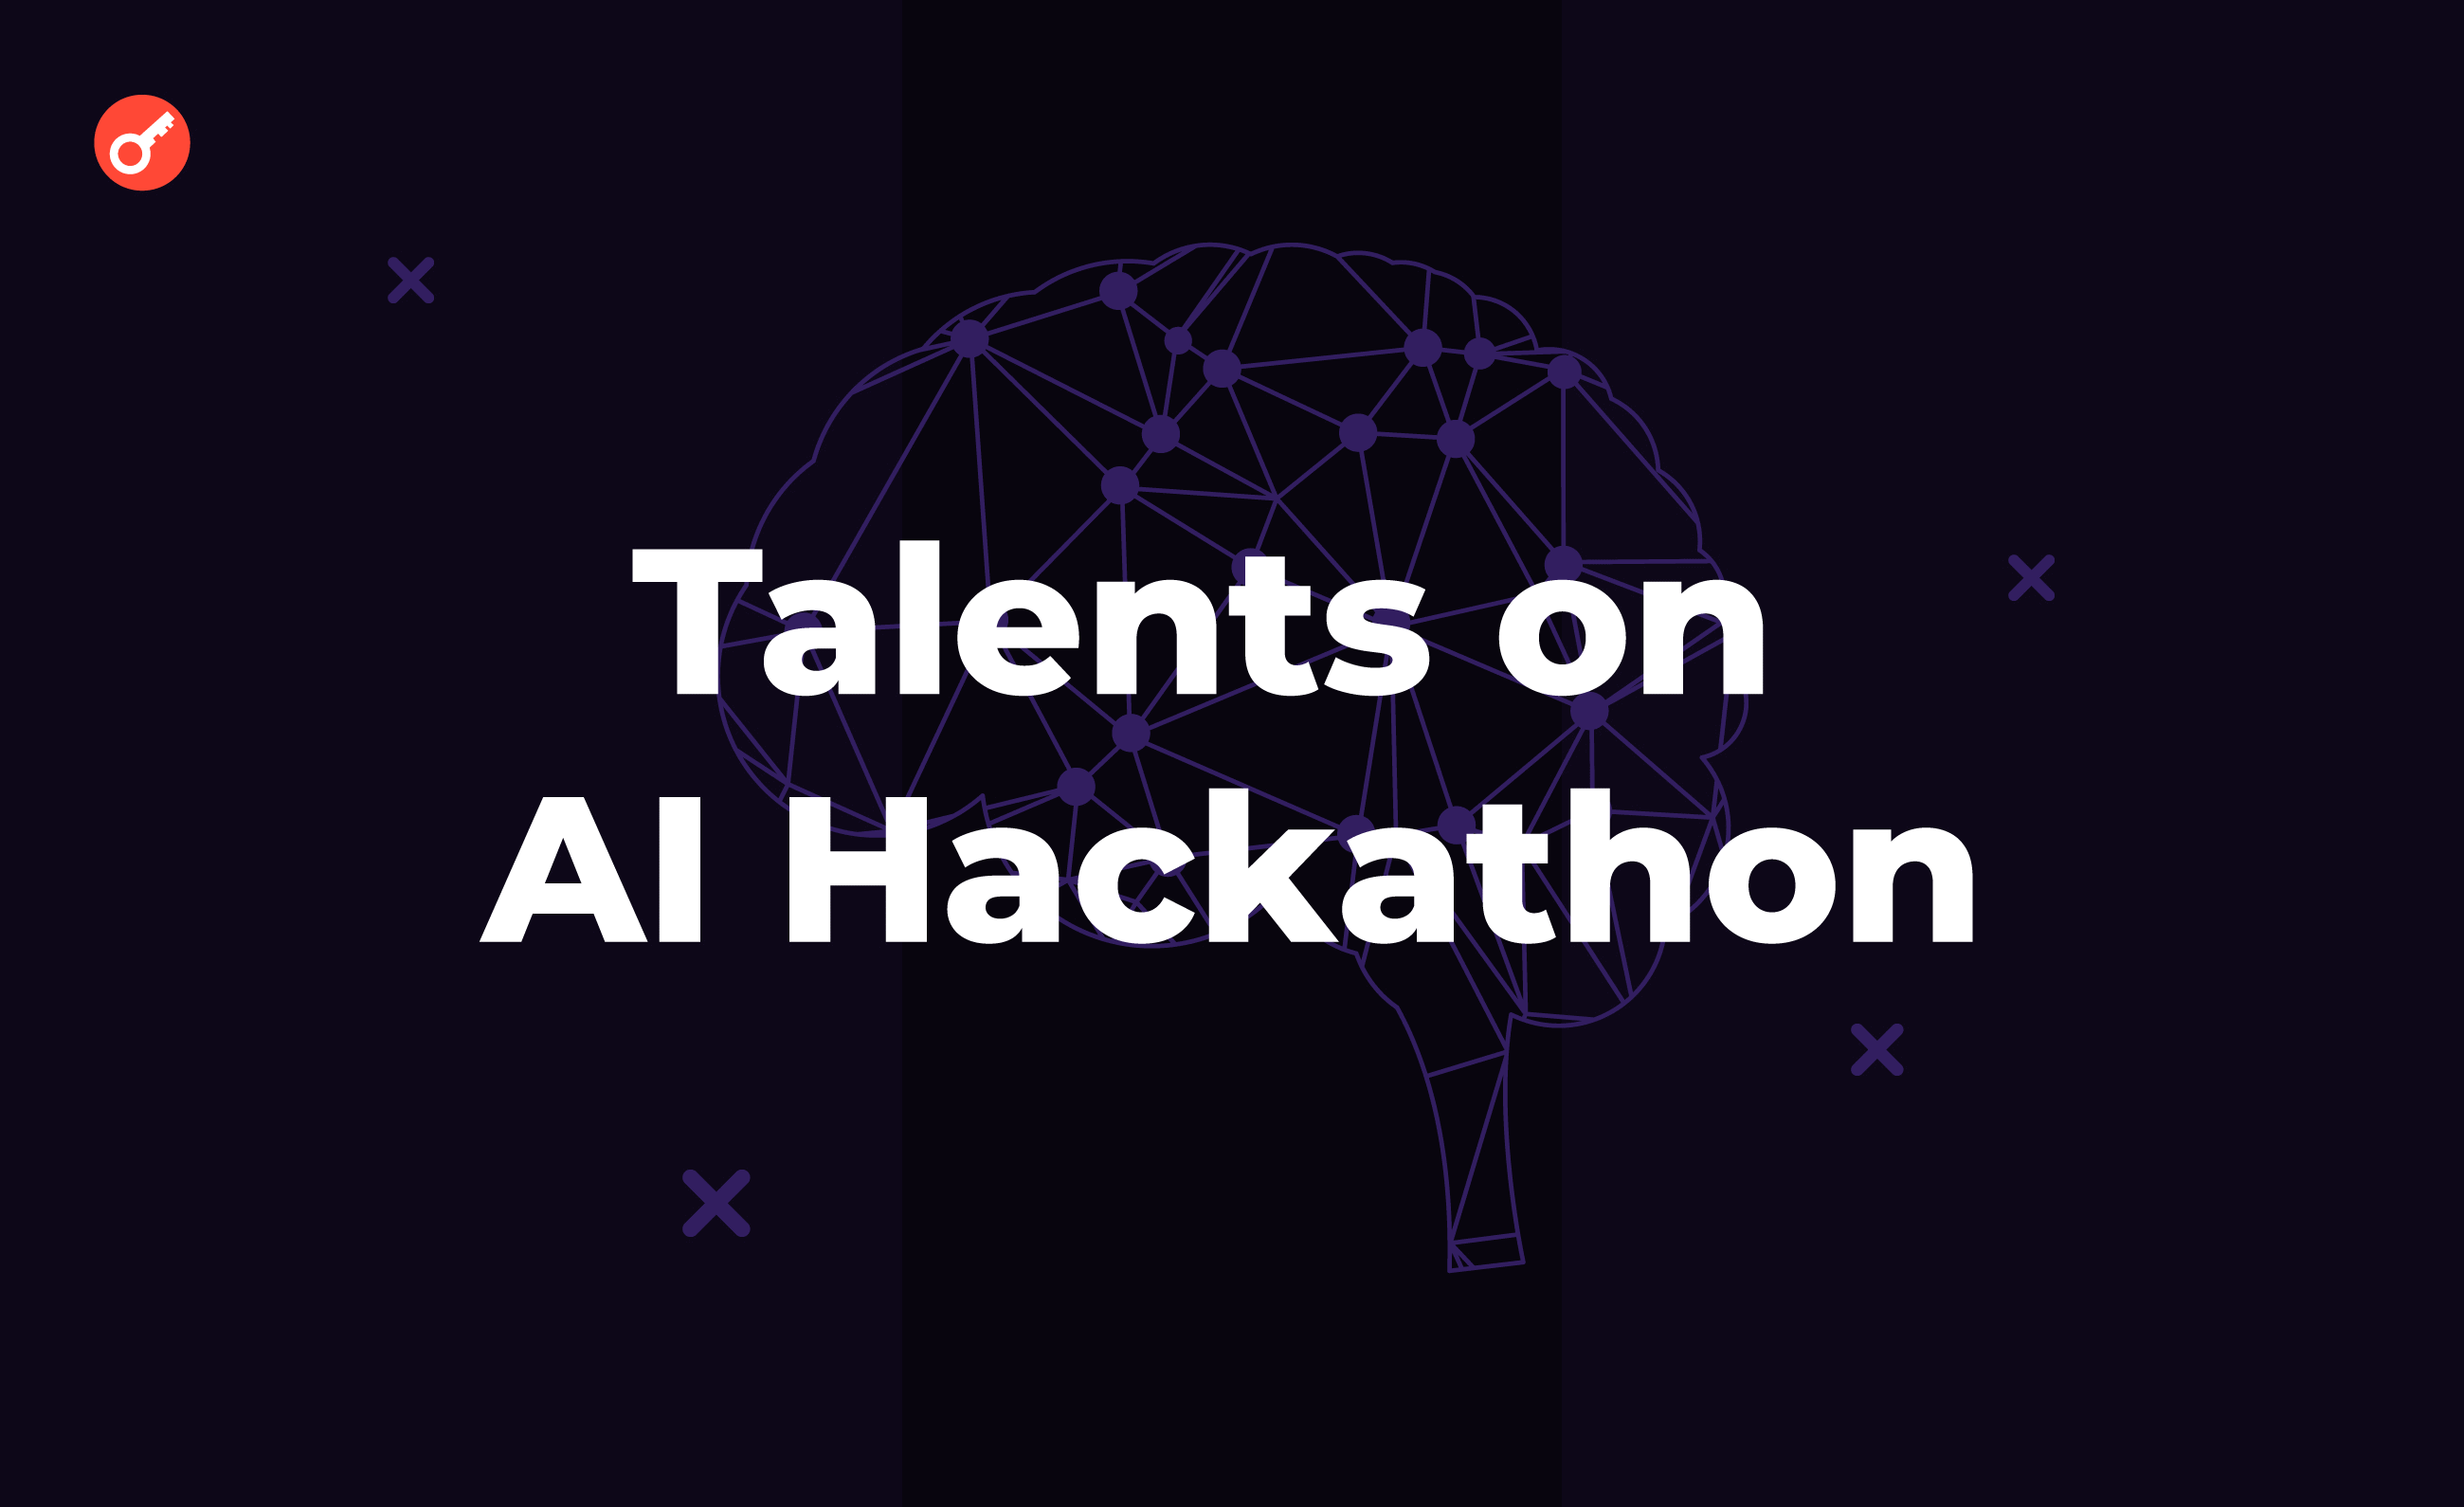 В Киеве стартует первый АІ-хакатон Talents on AI Hackathon. Заглавный коллаж новости.